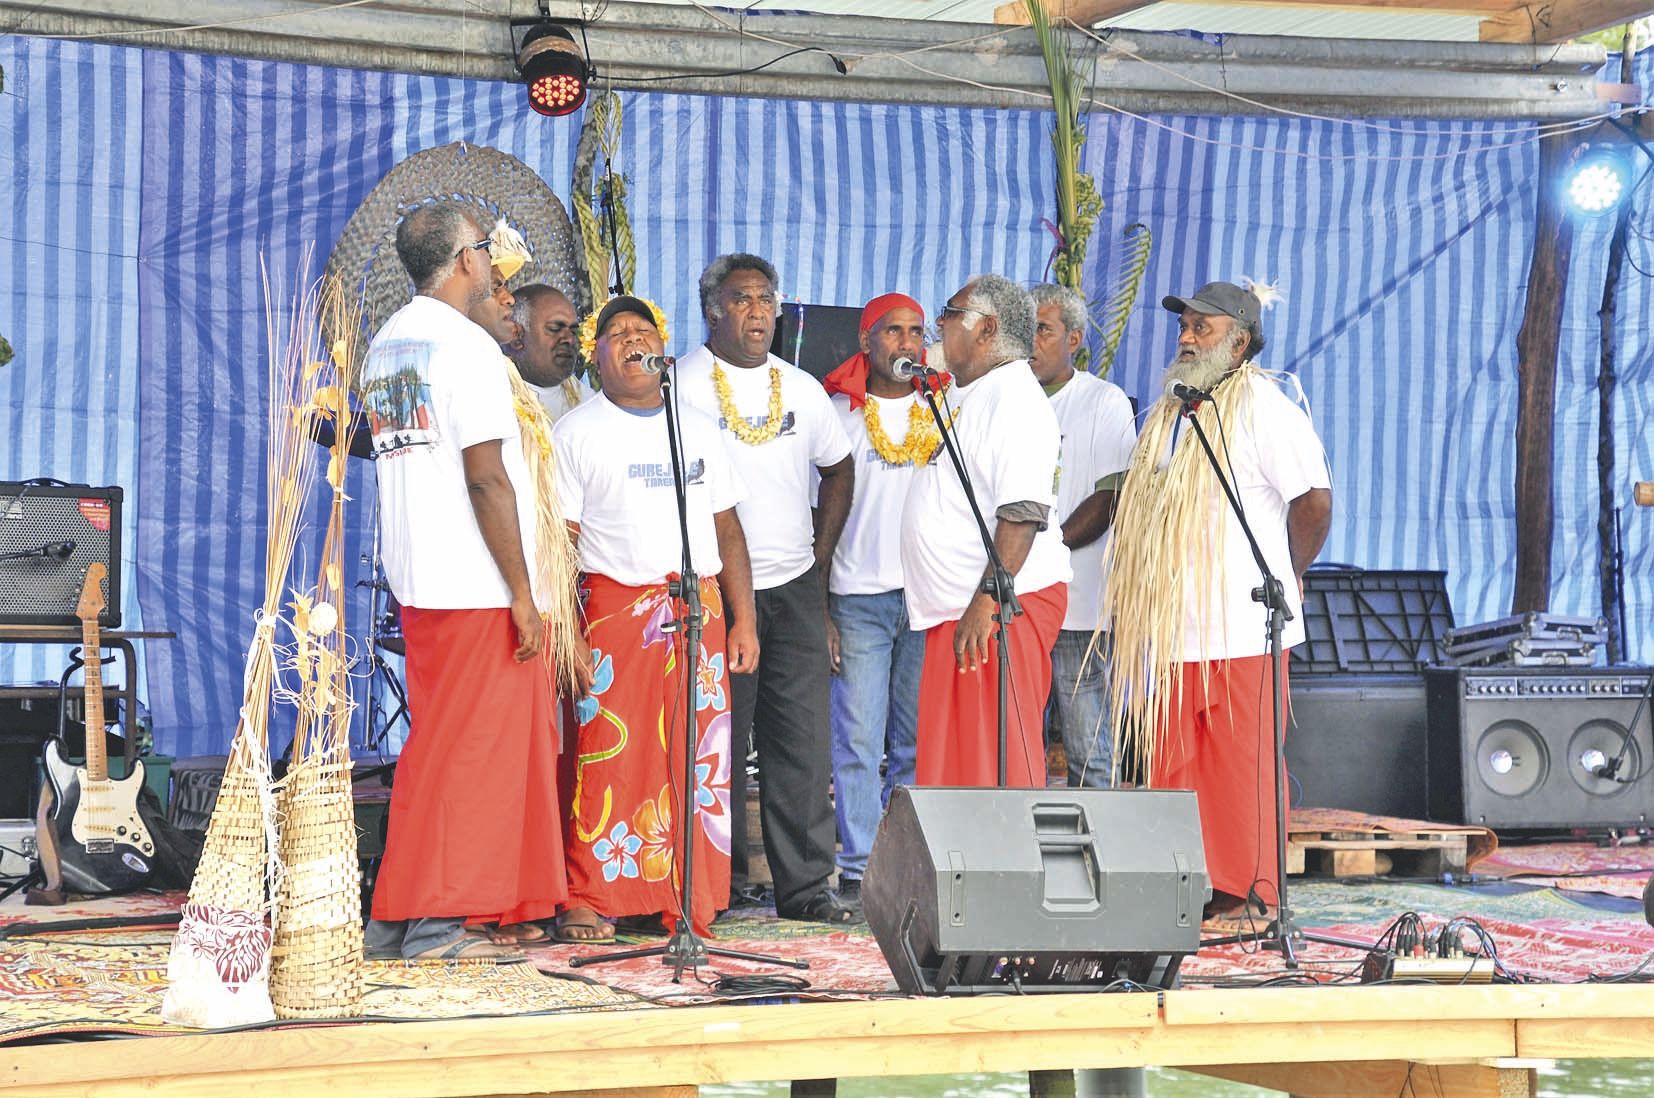 Les chants traditionnels ont eu leur place au sein de ce festival qui se voulait hétéroclite. La troupe de Mebuet et Tuo a ainsi pu entonner avec émotion son lepany vendredi.